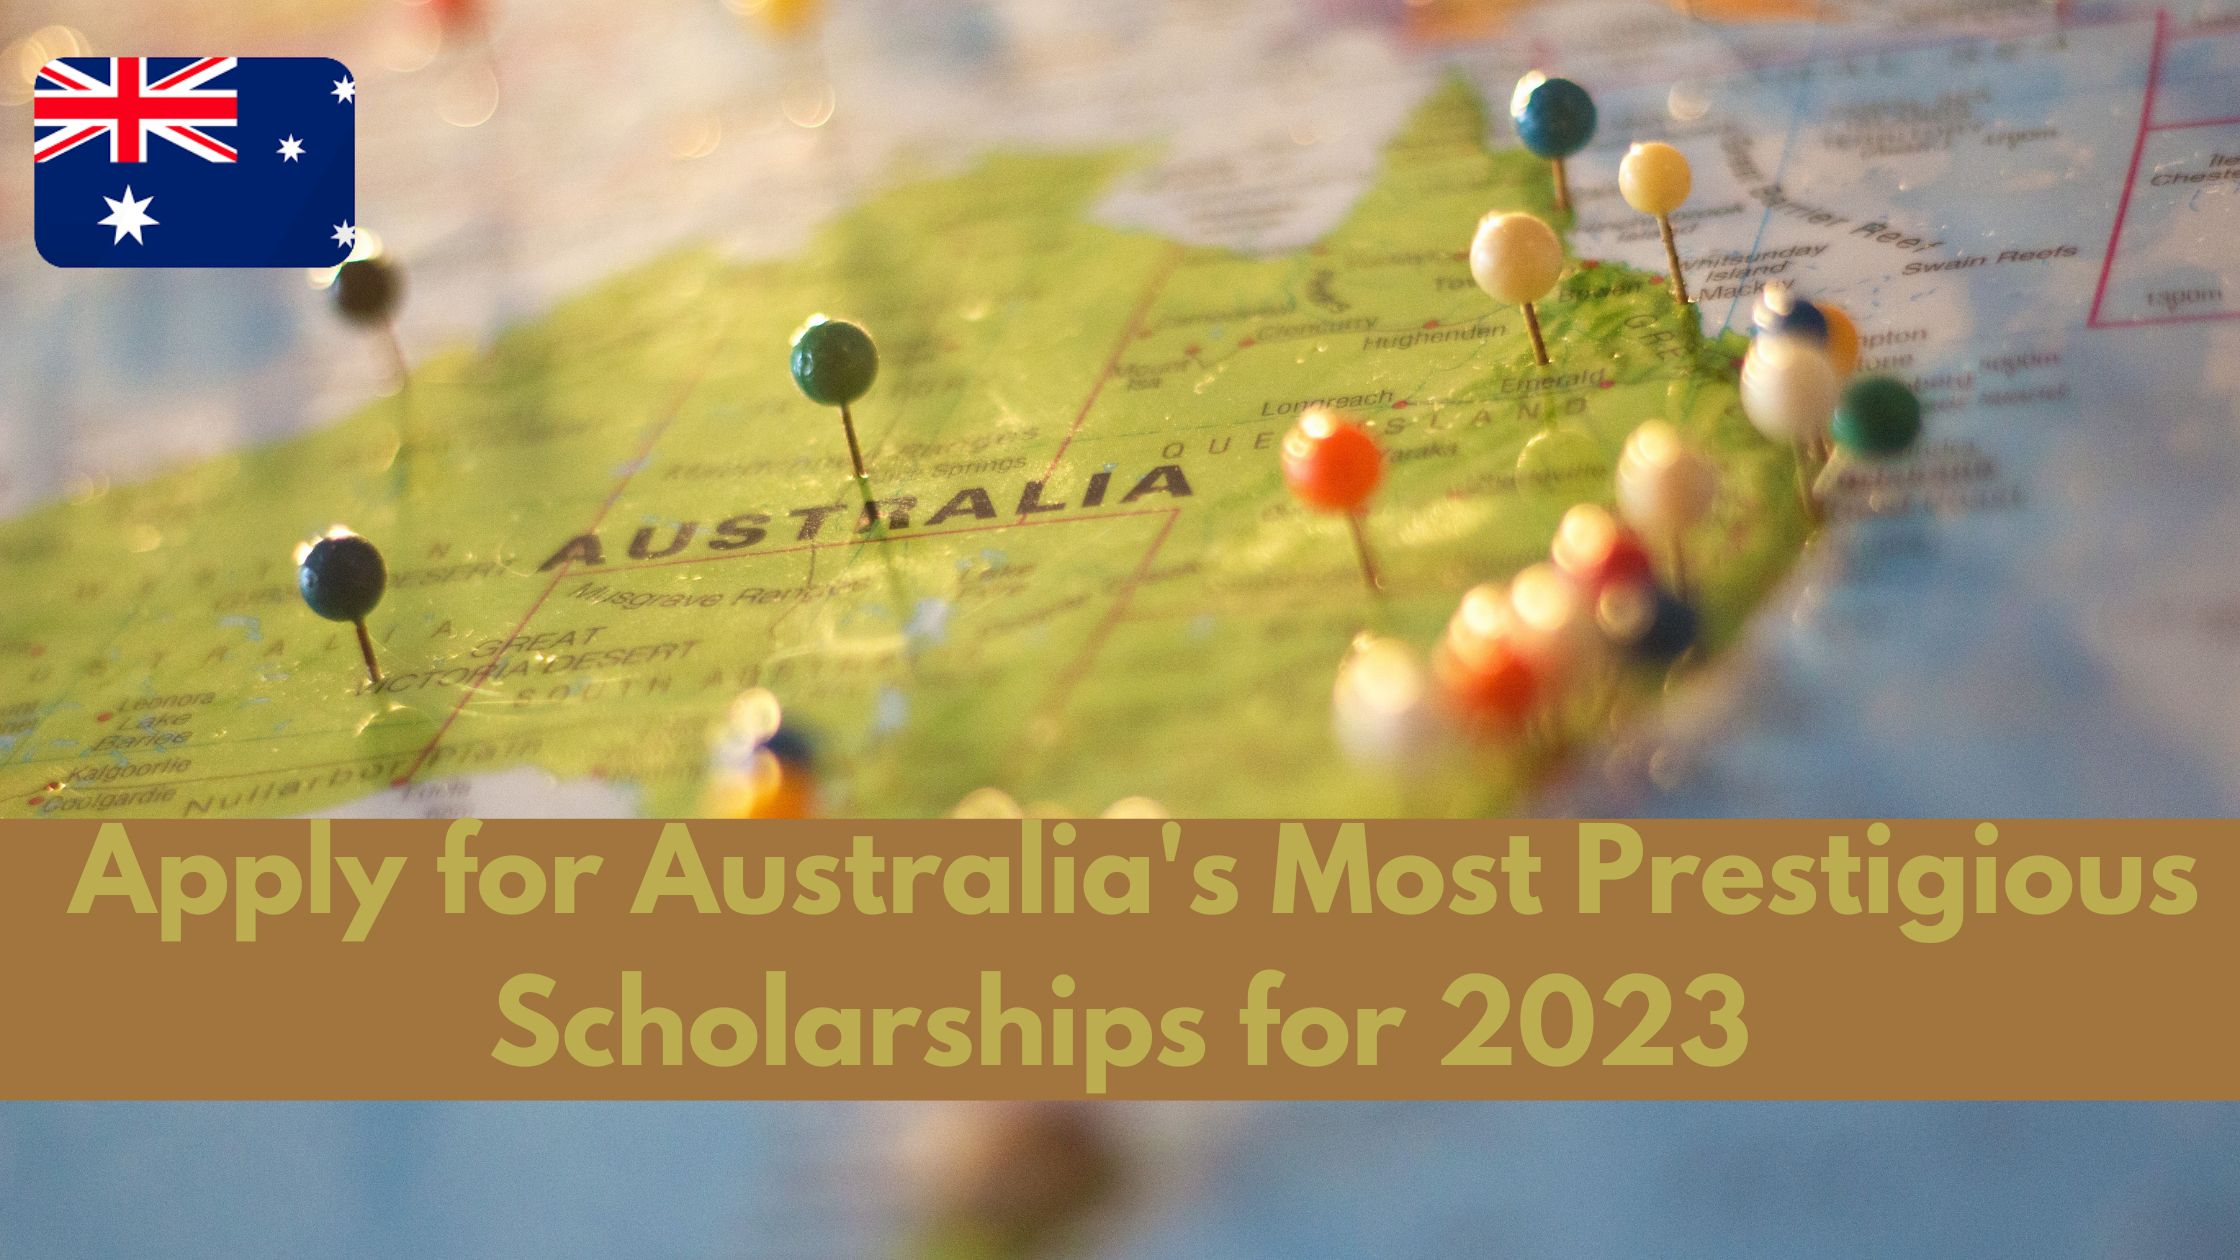 Apply for Australia's Most Prestigious Scholarships for 2023